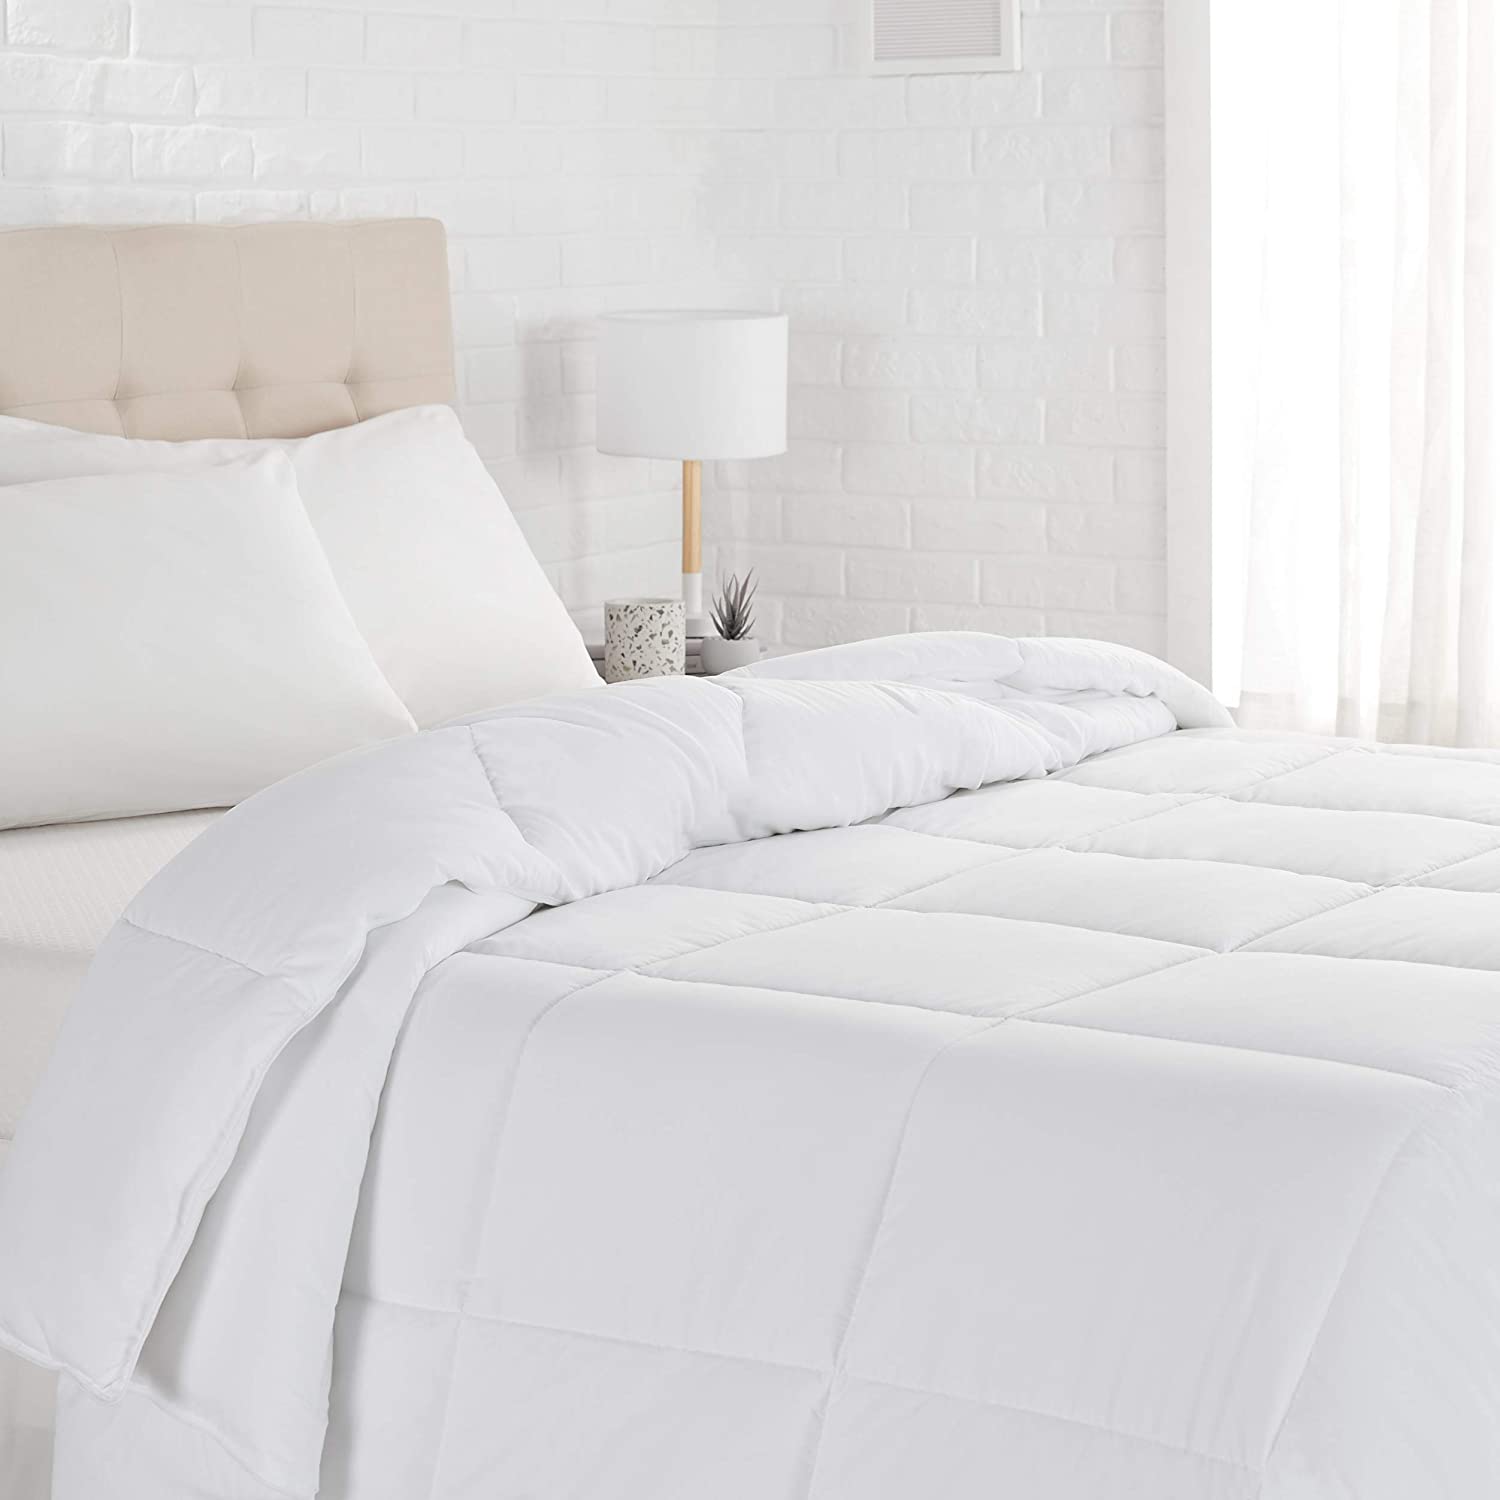 Price:$112.00 Amazon Basics Down Alternative Bedding Comforter Duvet Insert, Full / Queen, White, Light : Home & Kitchen